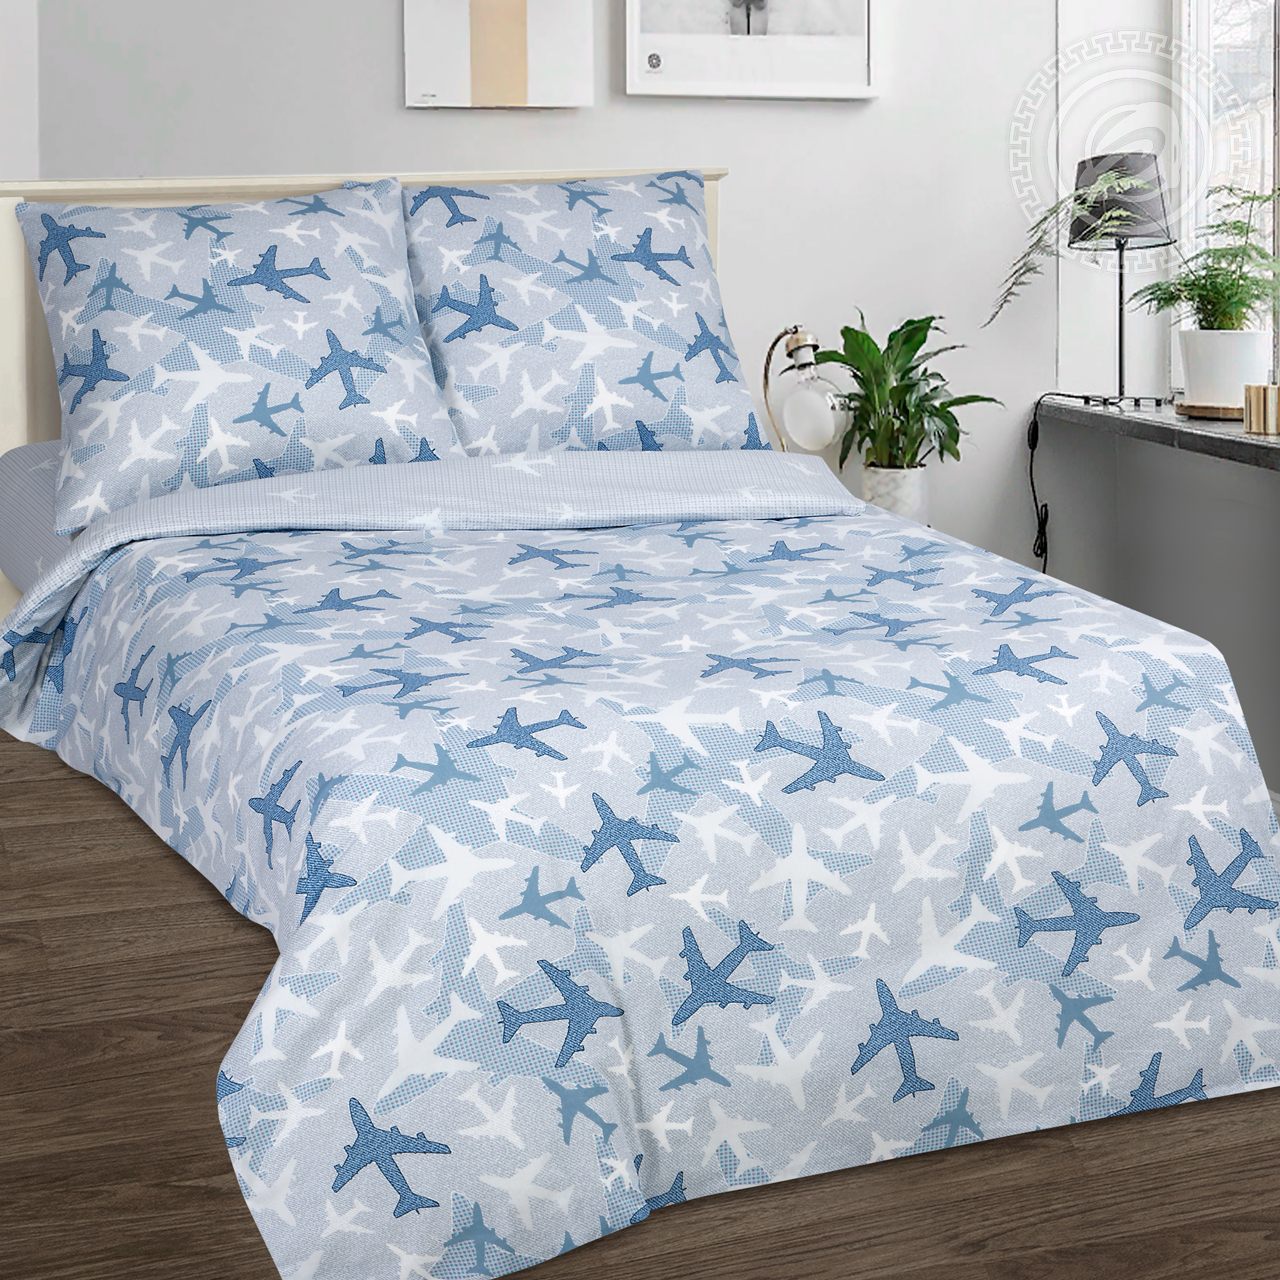 Комплект постельного белья из поплина Самолетики голубые